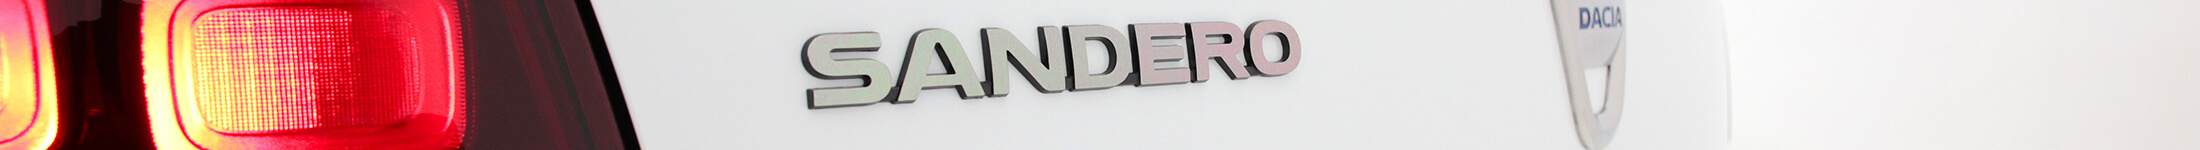 Dacia Sandero w abonamencie - baner - detal światła